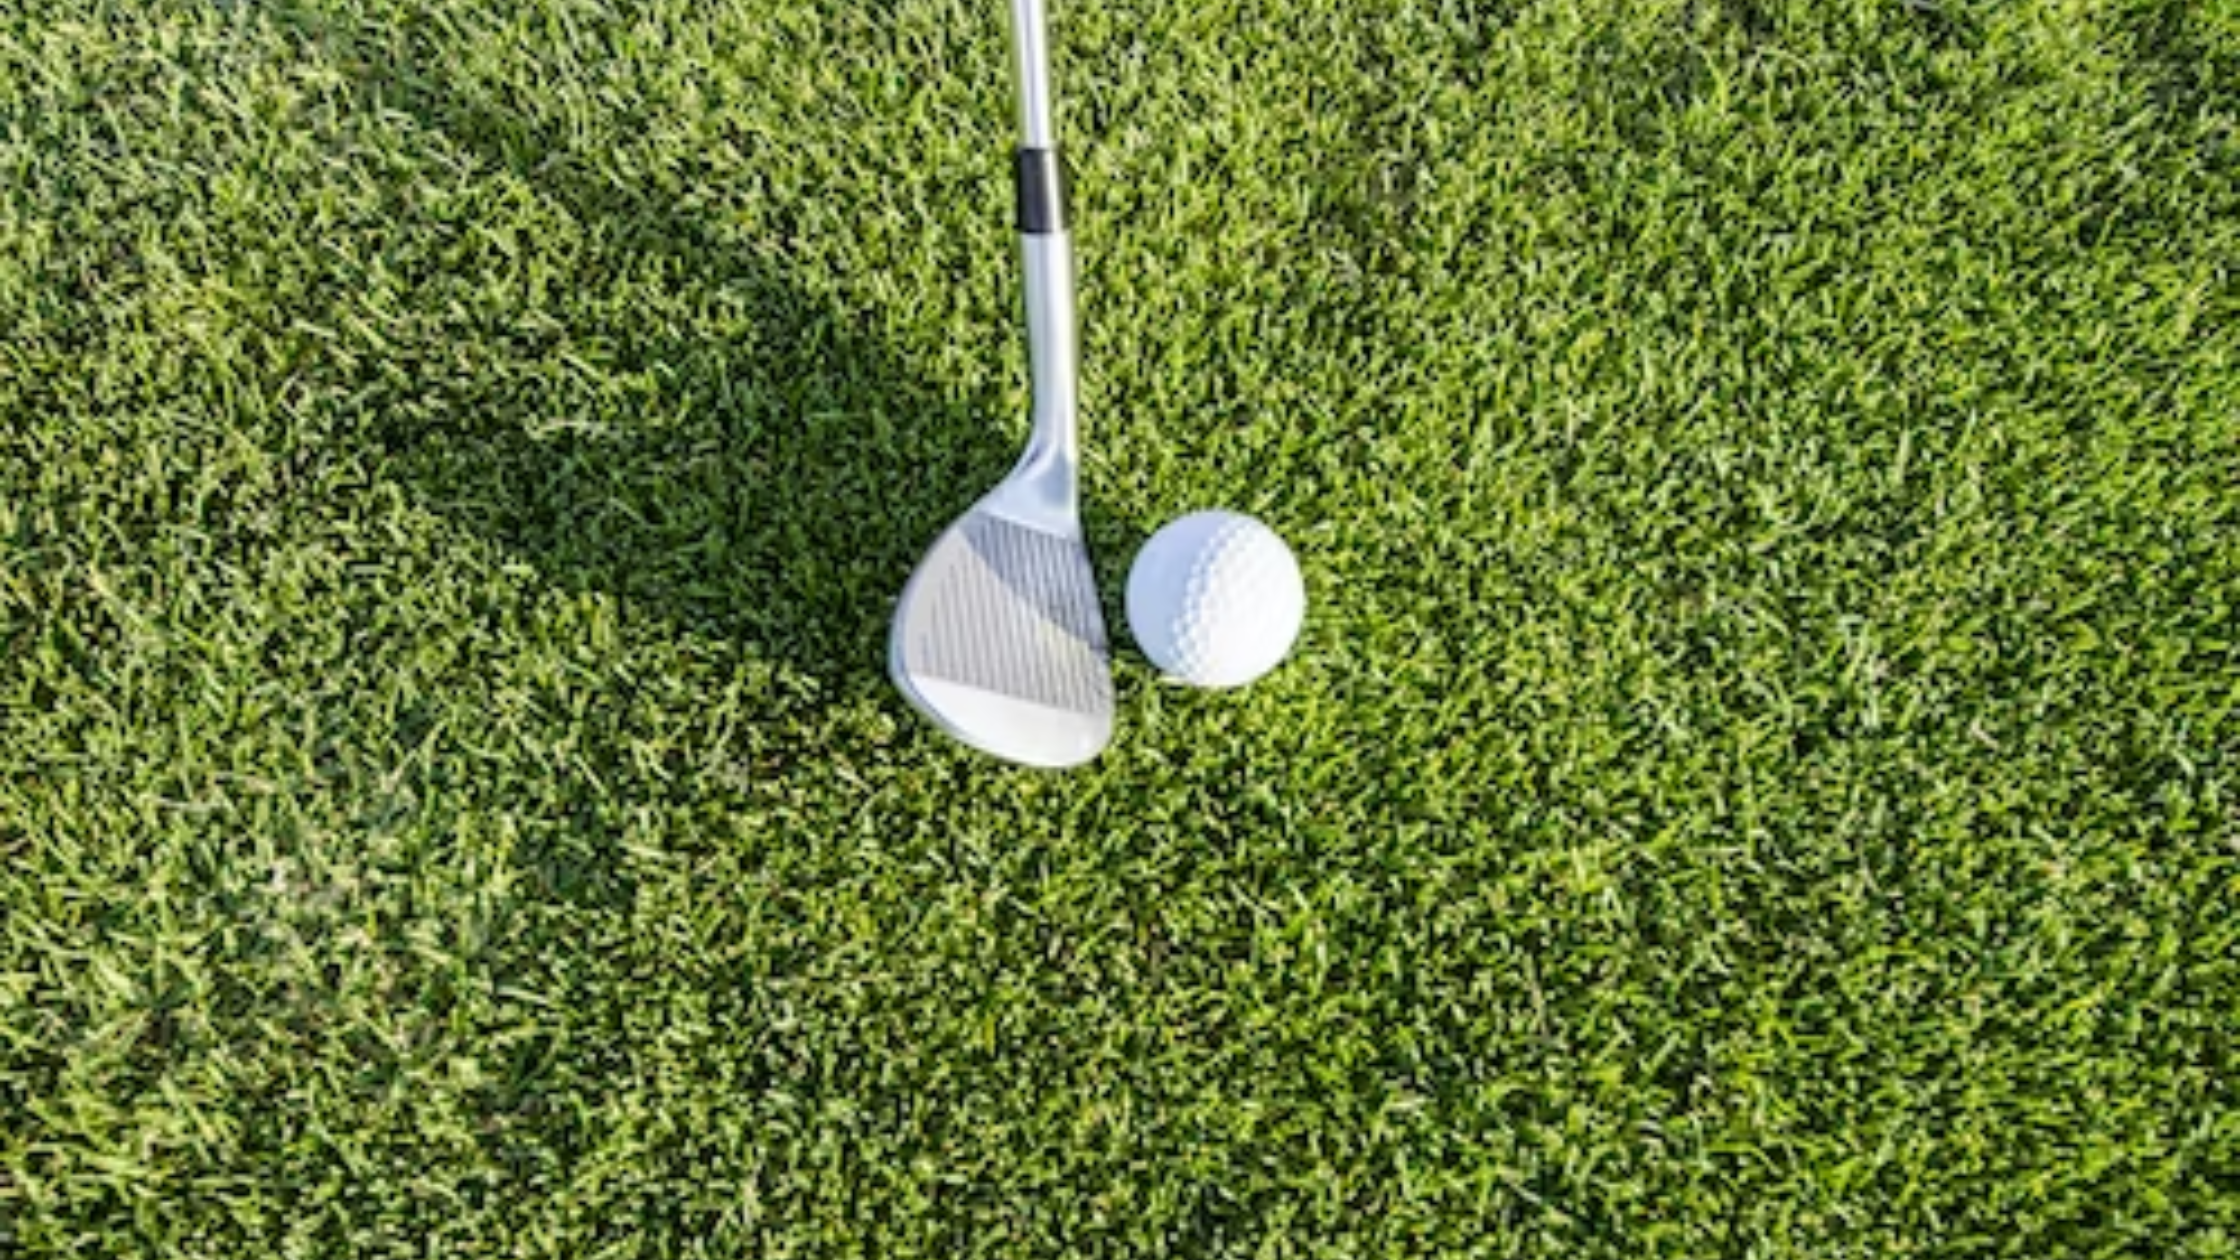 golf grips